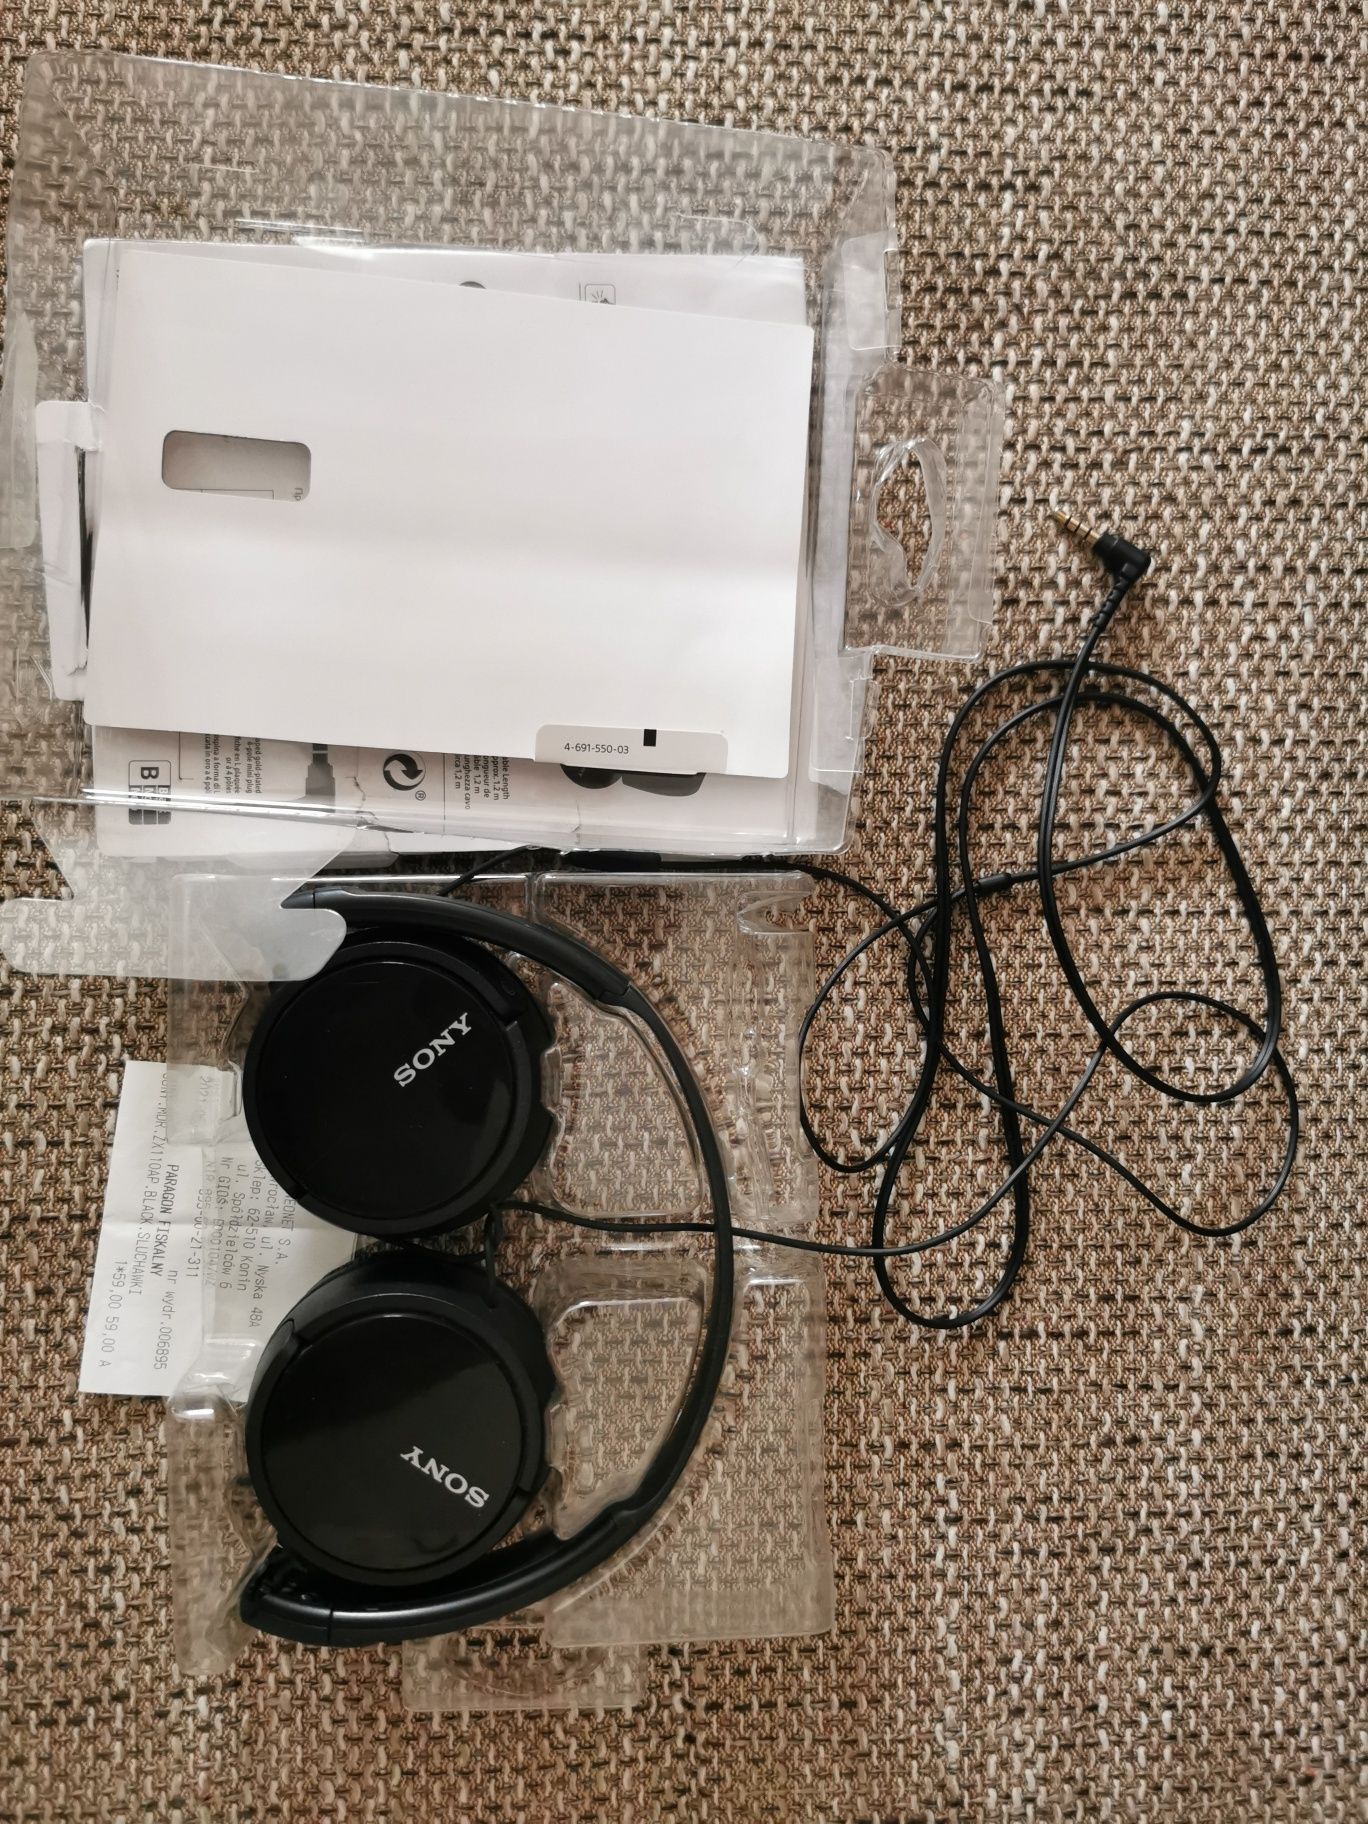 Słuchawki Sony MDR-ZX110AP